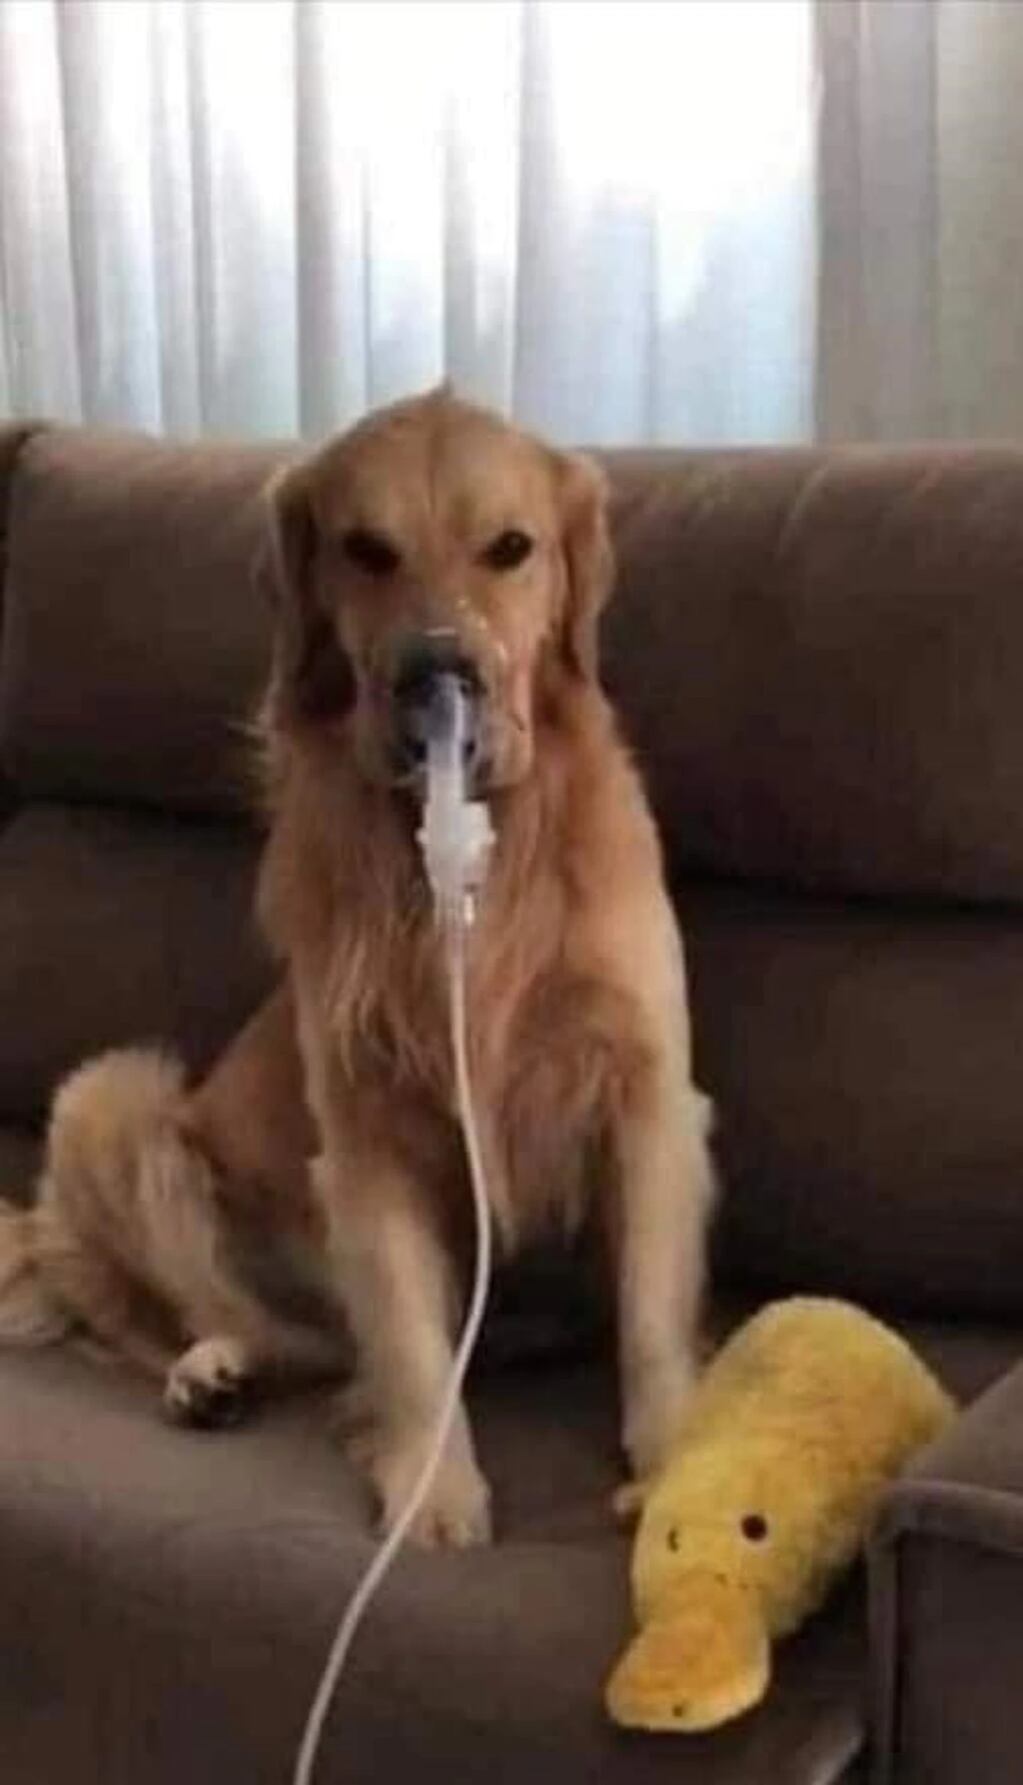 El can debe usar el nebulizador cuando le dan ataques de asma, pero él se deja porque sabe que eso le trae alivio.